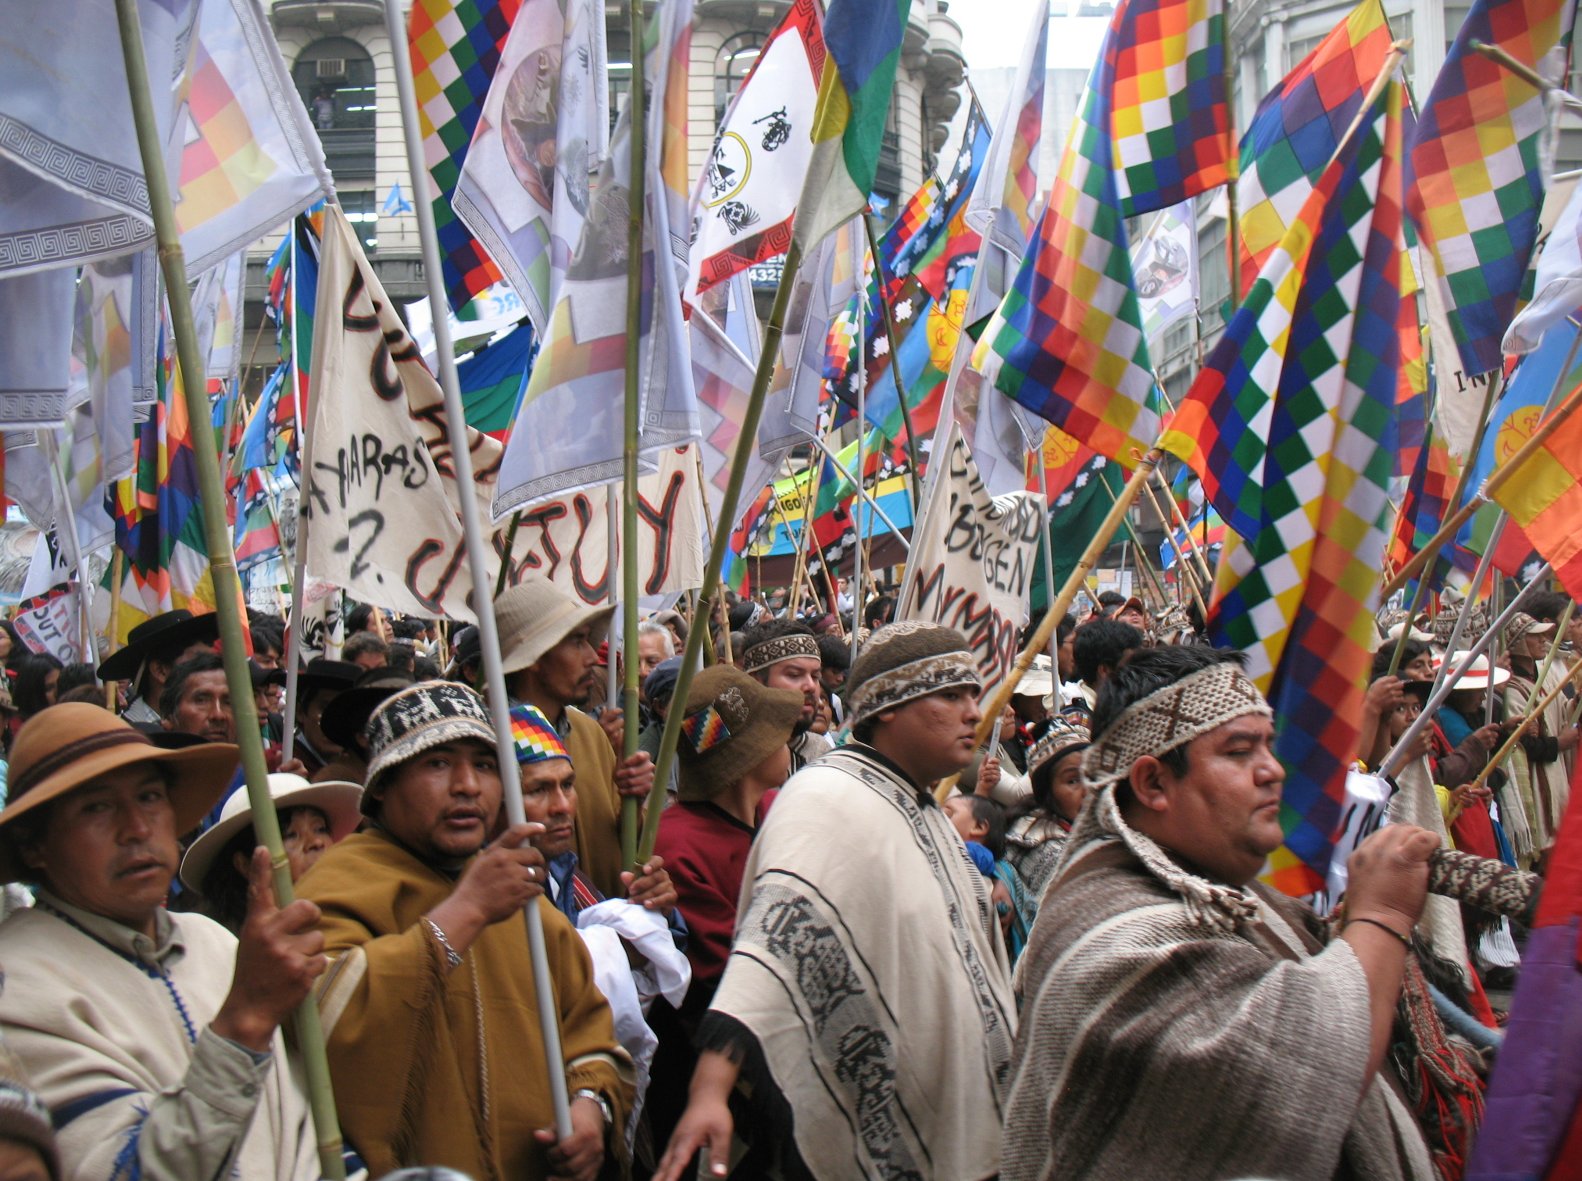 La agenda indígena en la Convención Constitucional de Chile